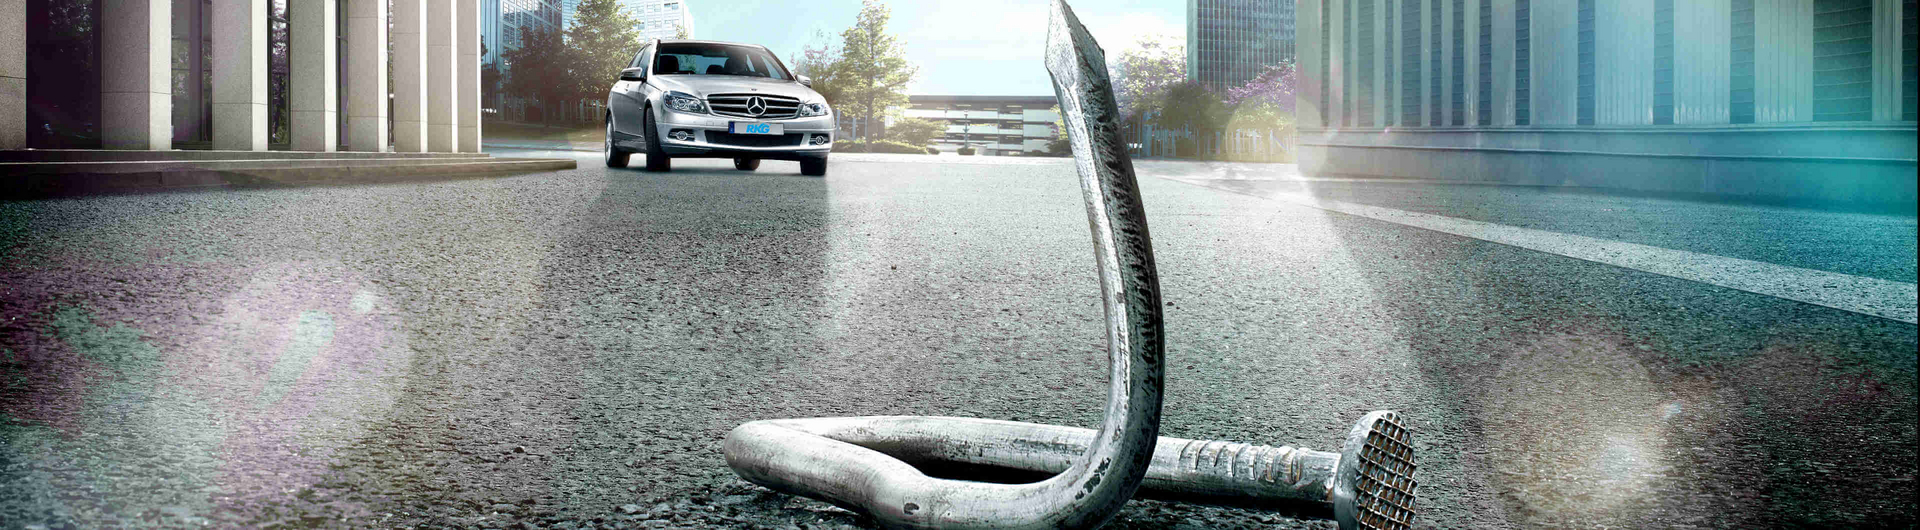 Die Reifengarantie von Mercedes-Benz - jetzt abschließen bei der RKG und sorgenfrei fahren